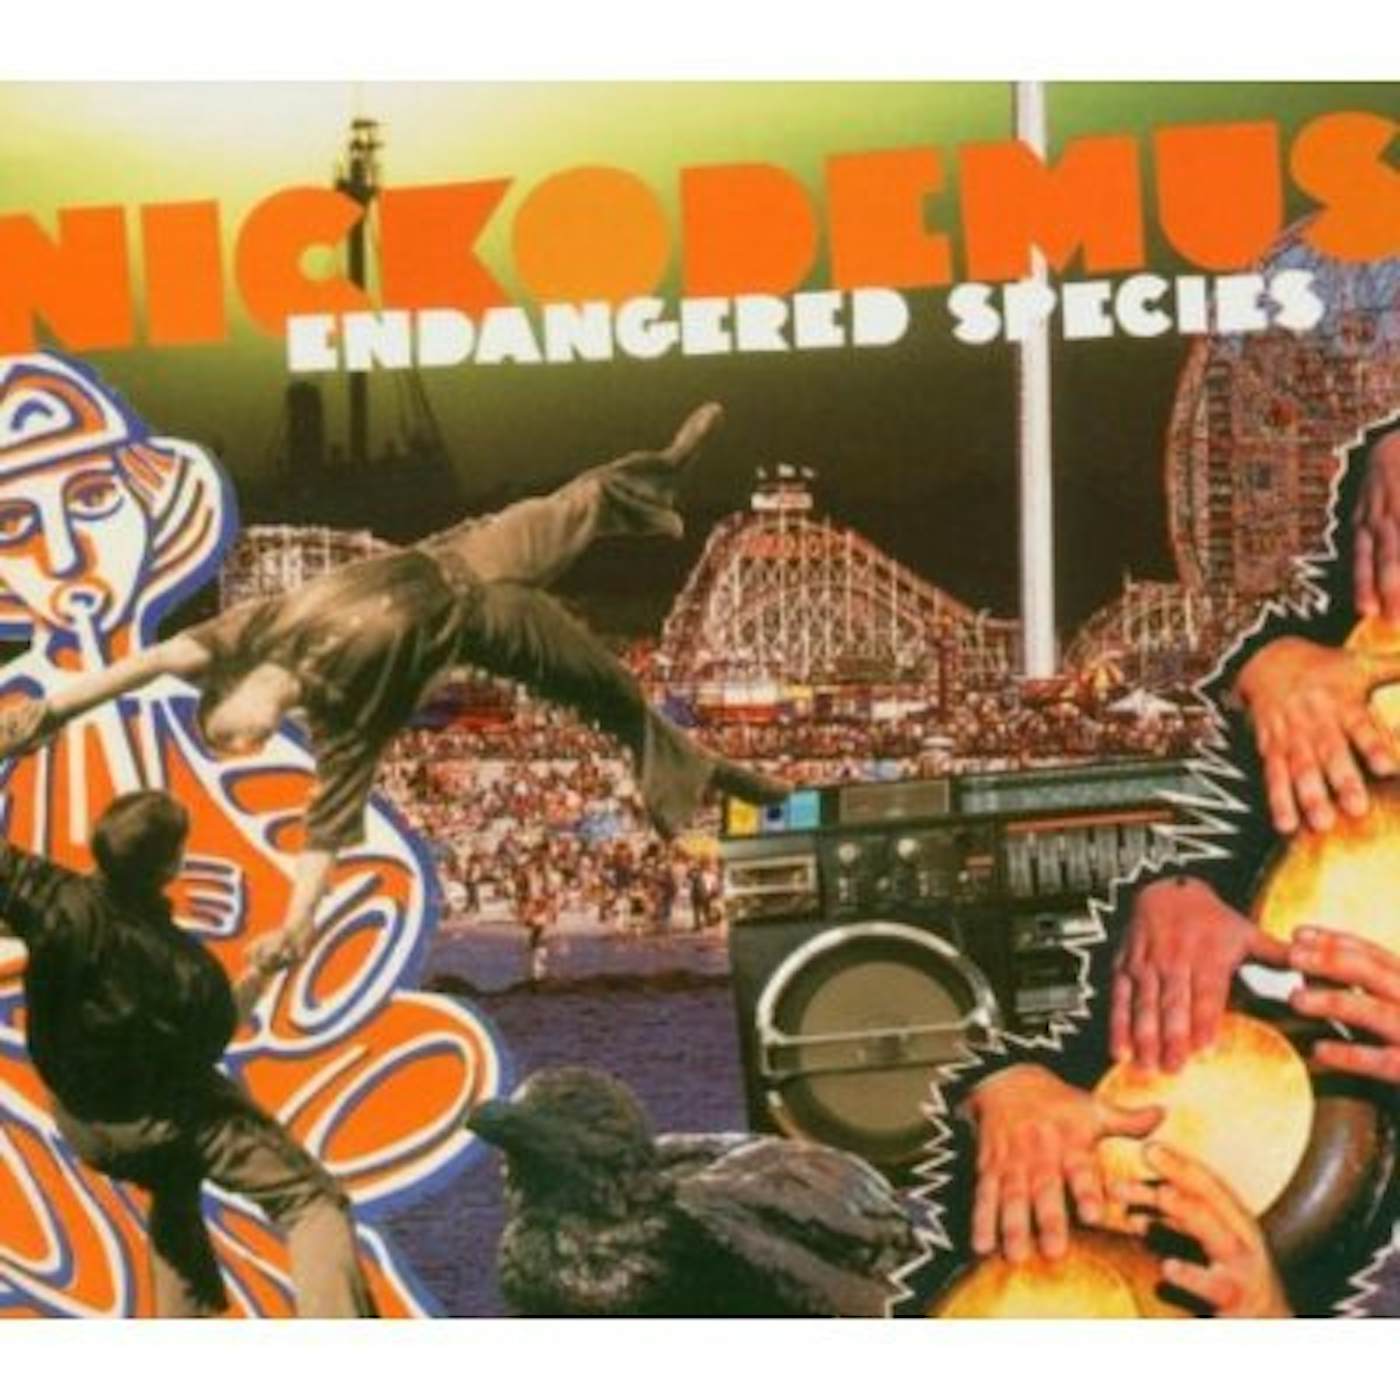 Nickodemus ENDANGERED SPECIES CD